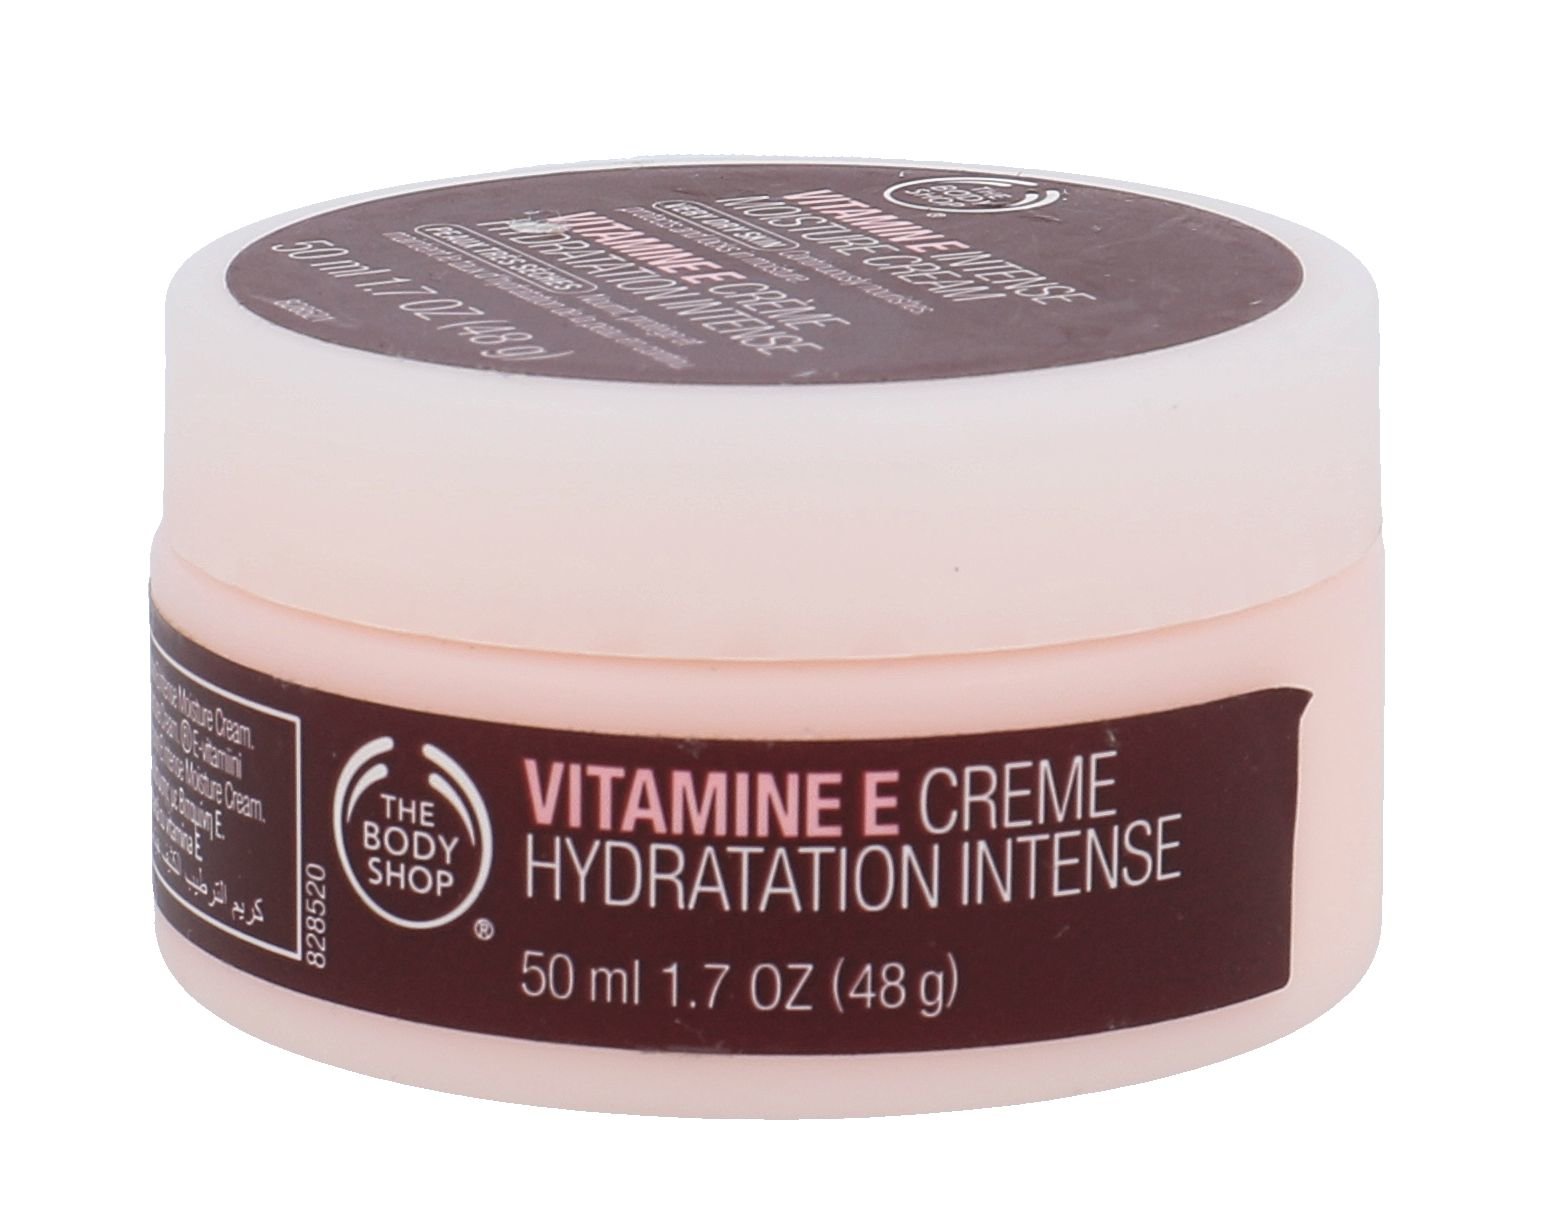 The Body Shop Vitamin E Intense Moisture Cream